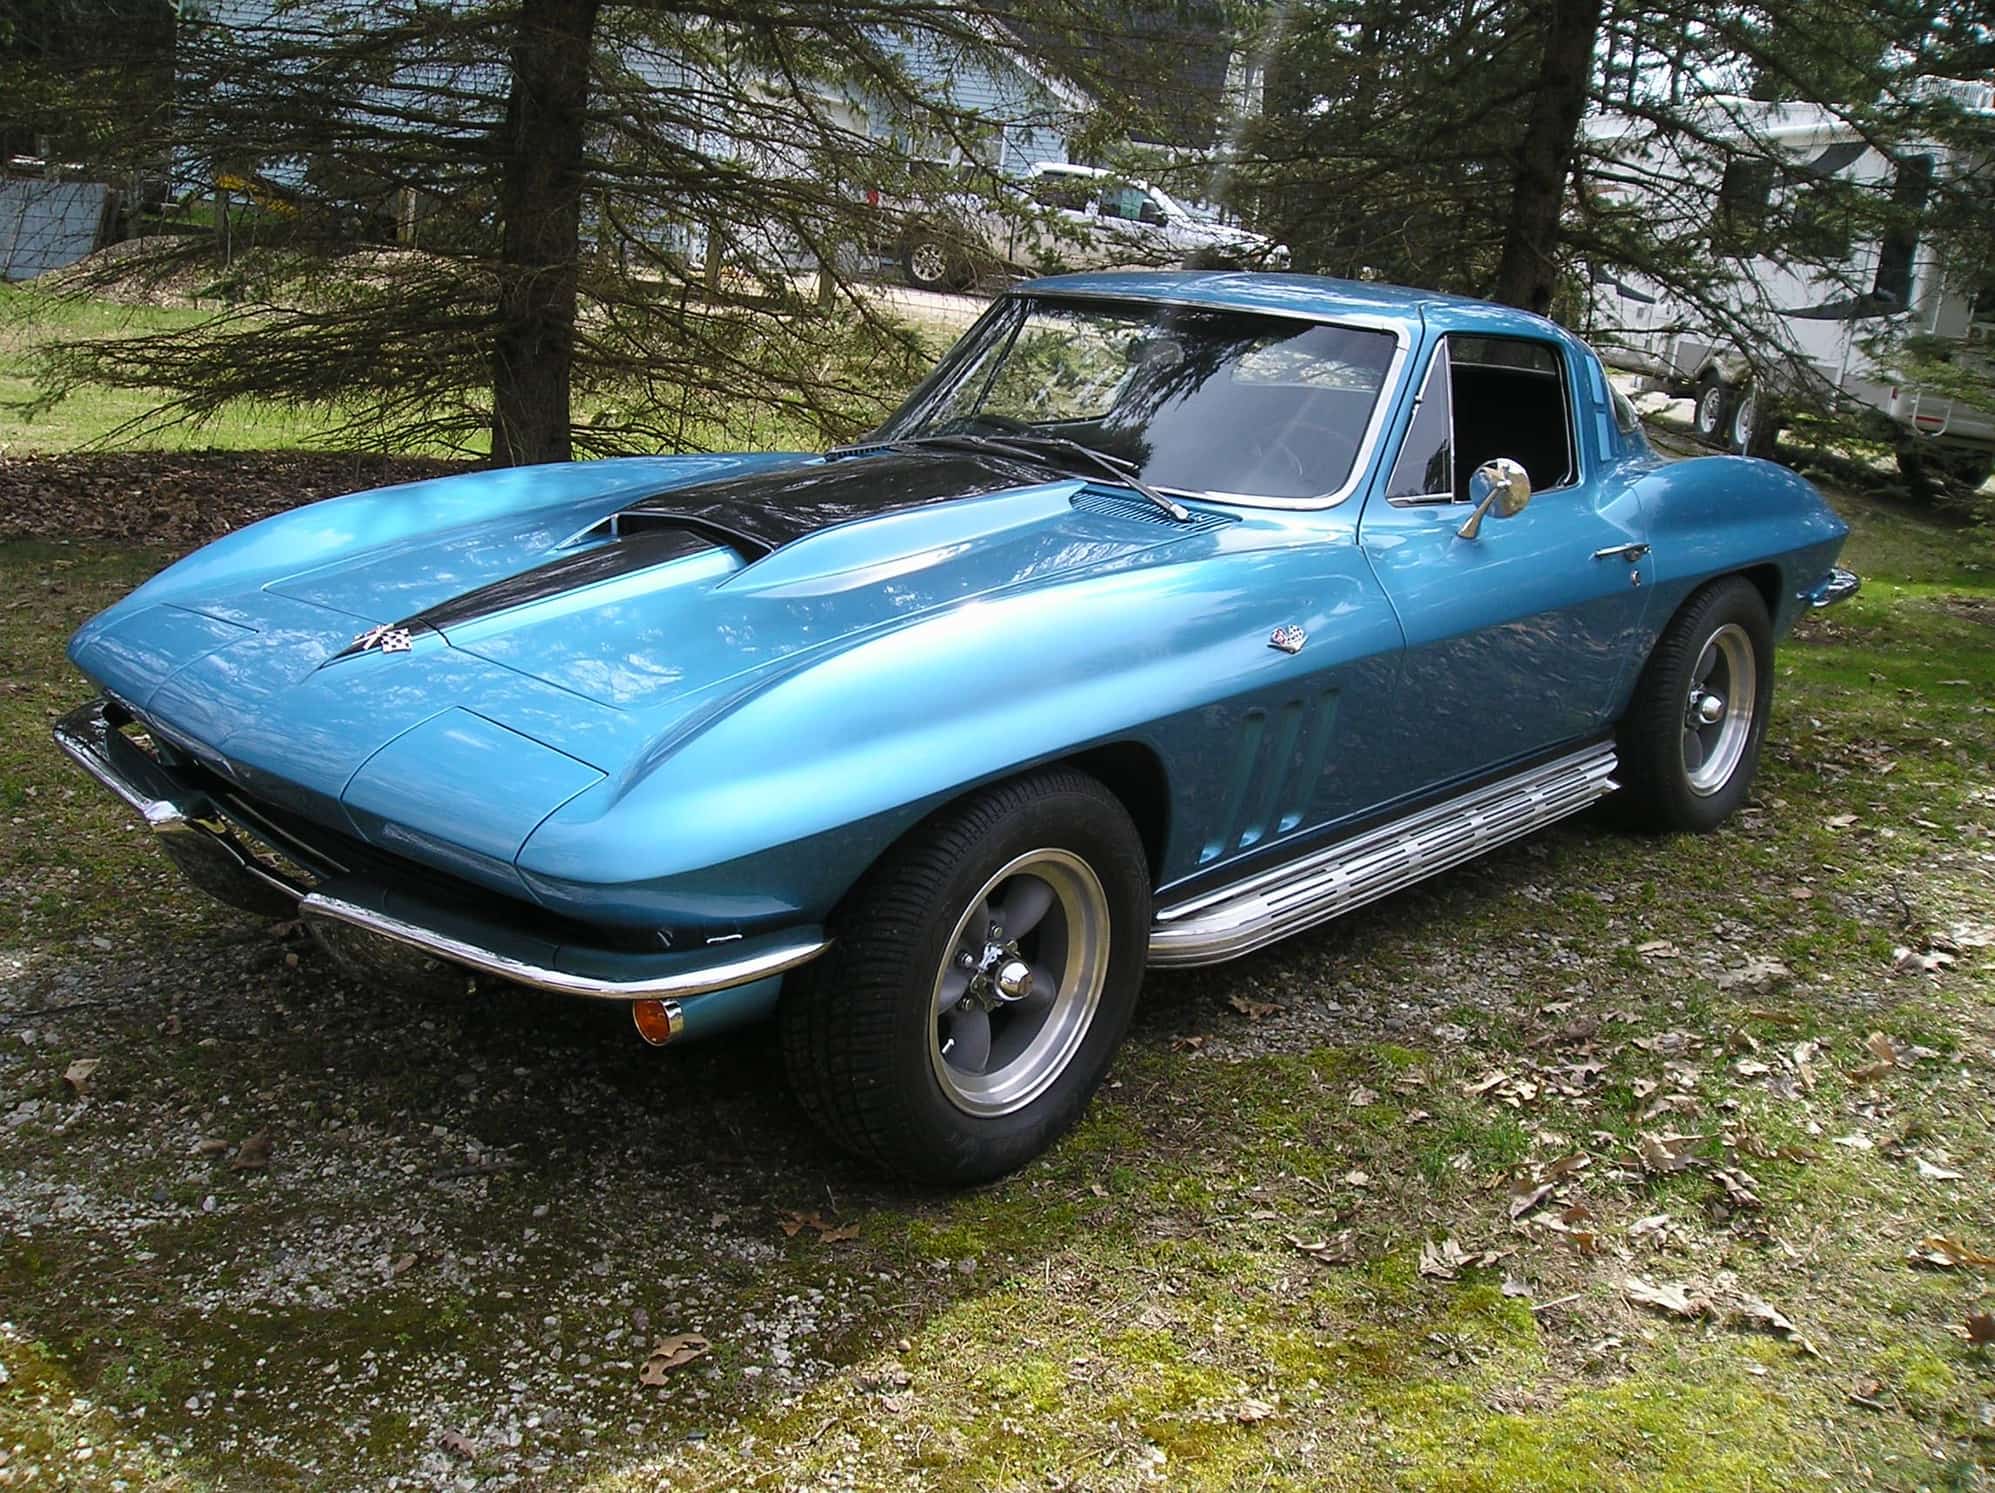 FS For Sale 1965 Corvette Coupe Nassau Blue 5 Spd Black Interior.